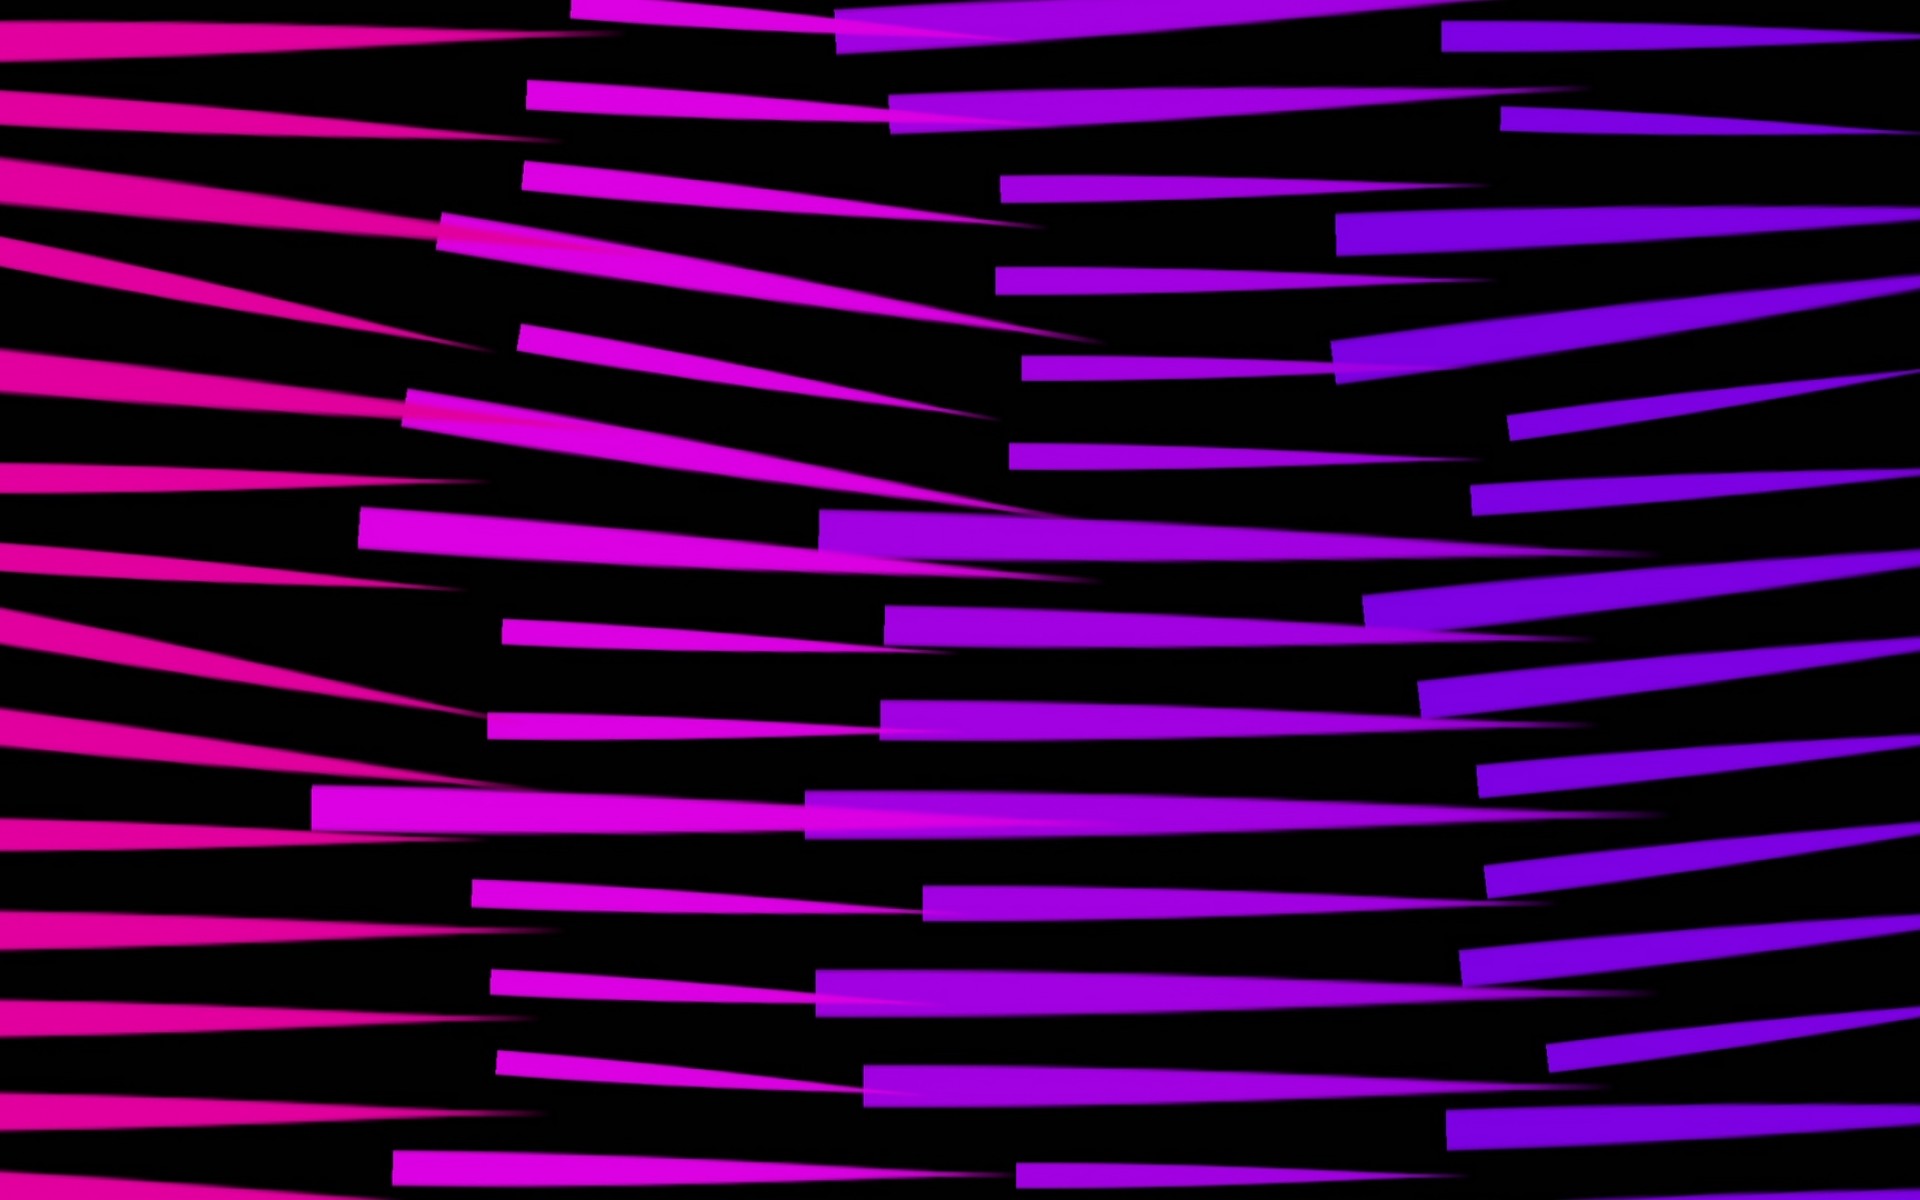 Lilak amd purple lines HD Wallpaper